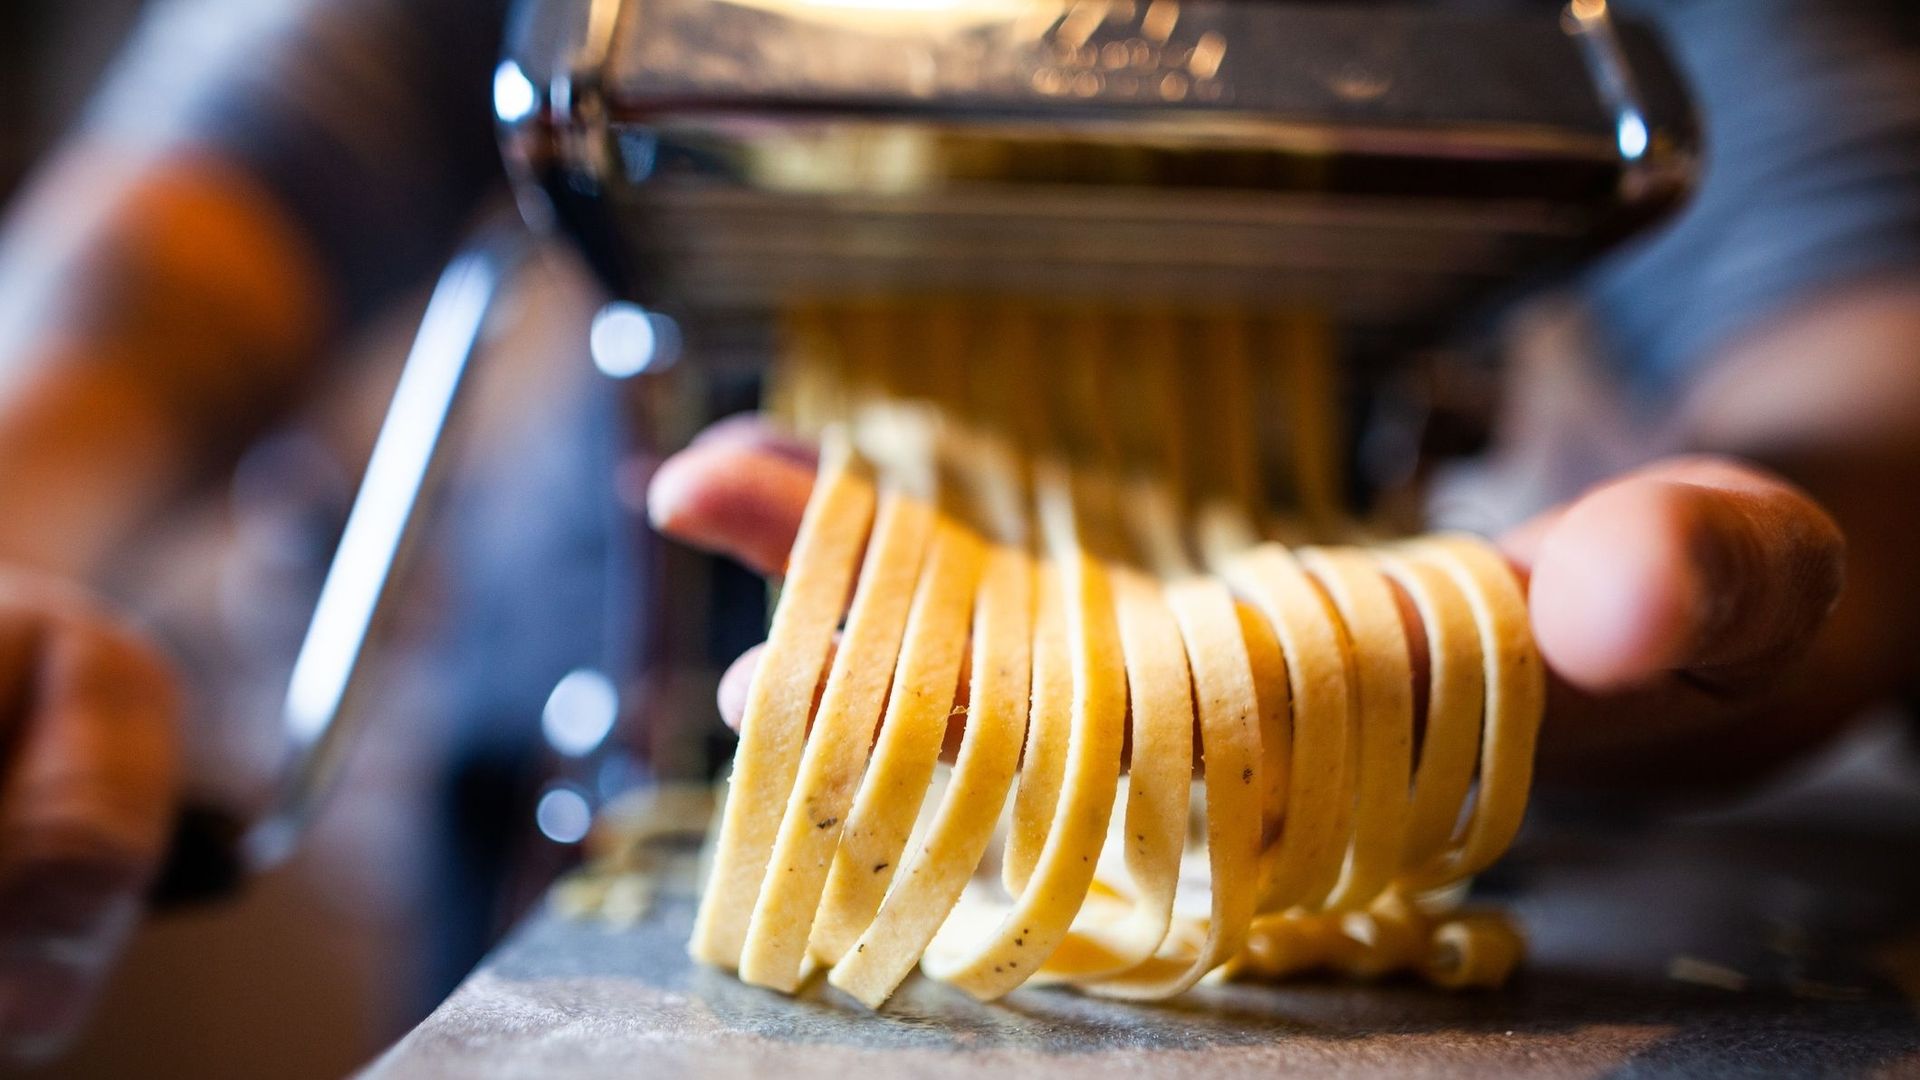 On a trouvé un moyen de garder les pâtes fraîches plus longtemps (et réduire le gaspillage) sans ajouter d'additif !